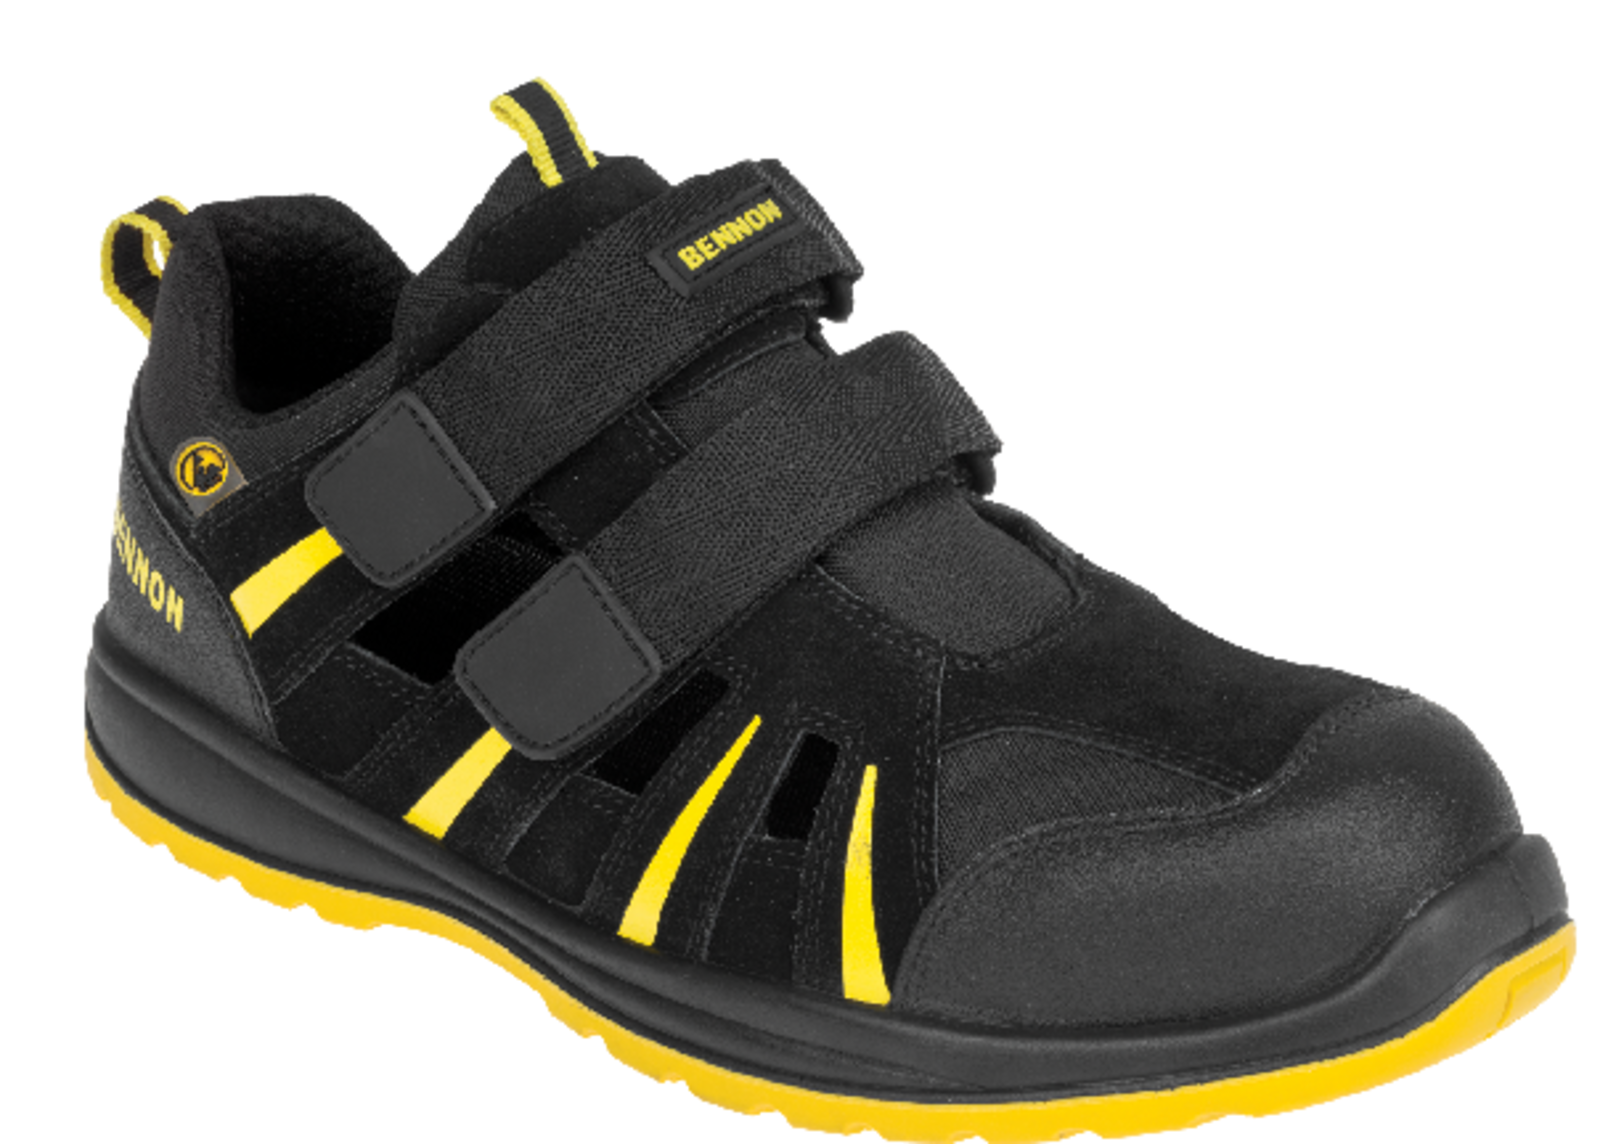 Bezpečnostné sandále Bennon Ribbon S1 ESD - veľkosť: 43, farba: čierna/žltá